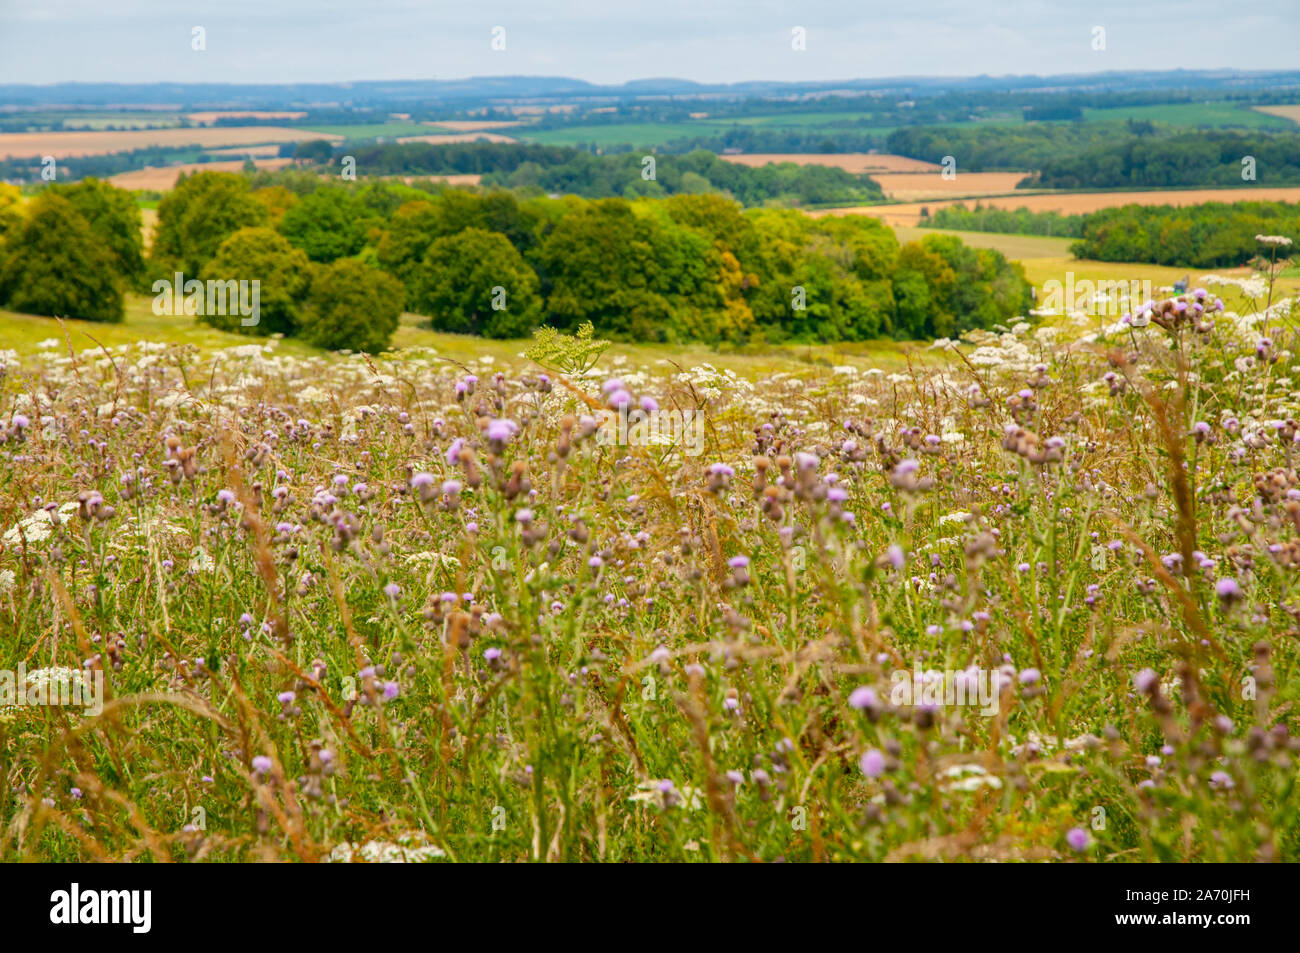 Fiori Selvatici con Hampshire rurali paesaggio di colline coltivate e boschi in background. Foto Stock